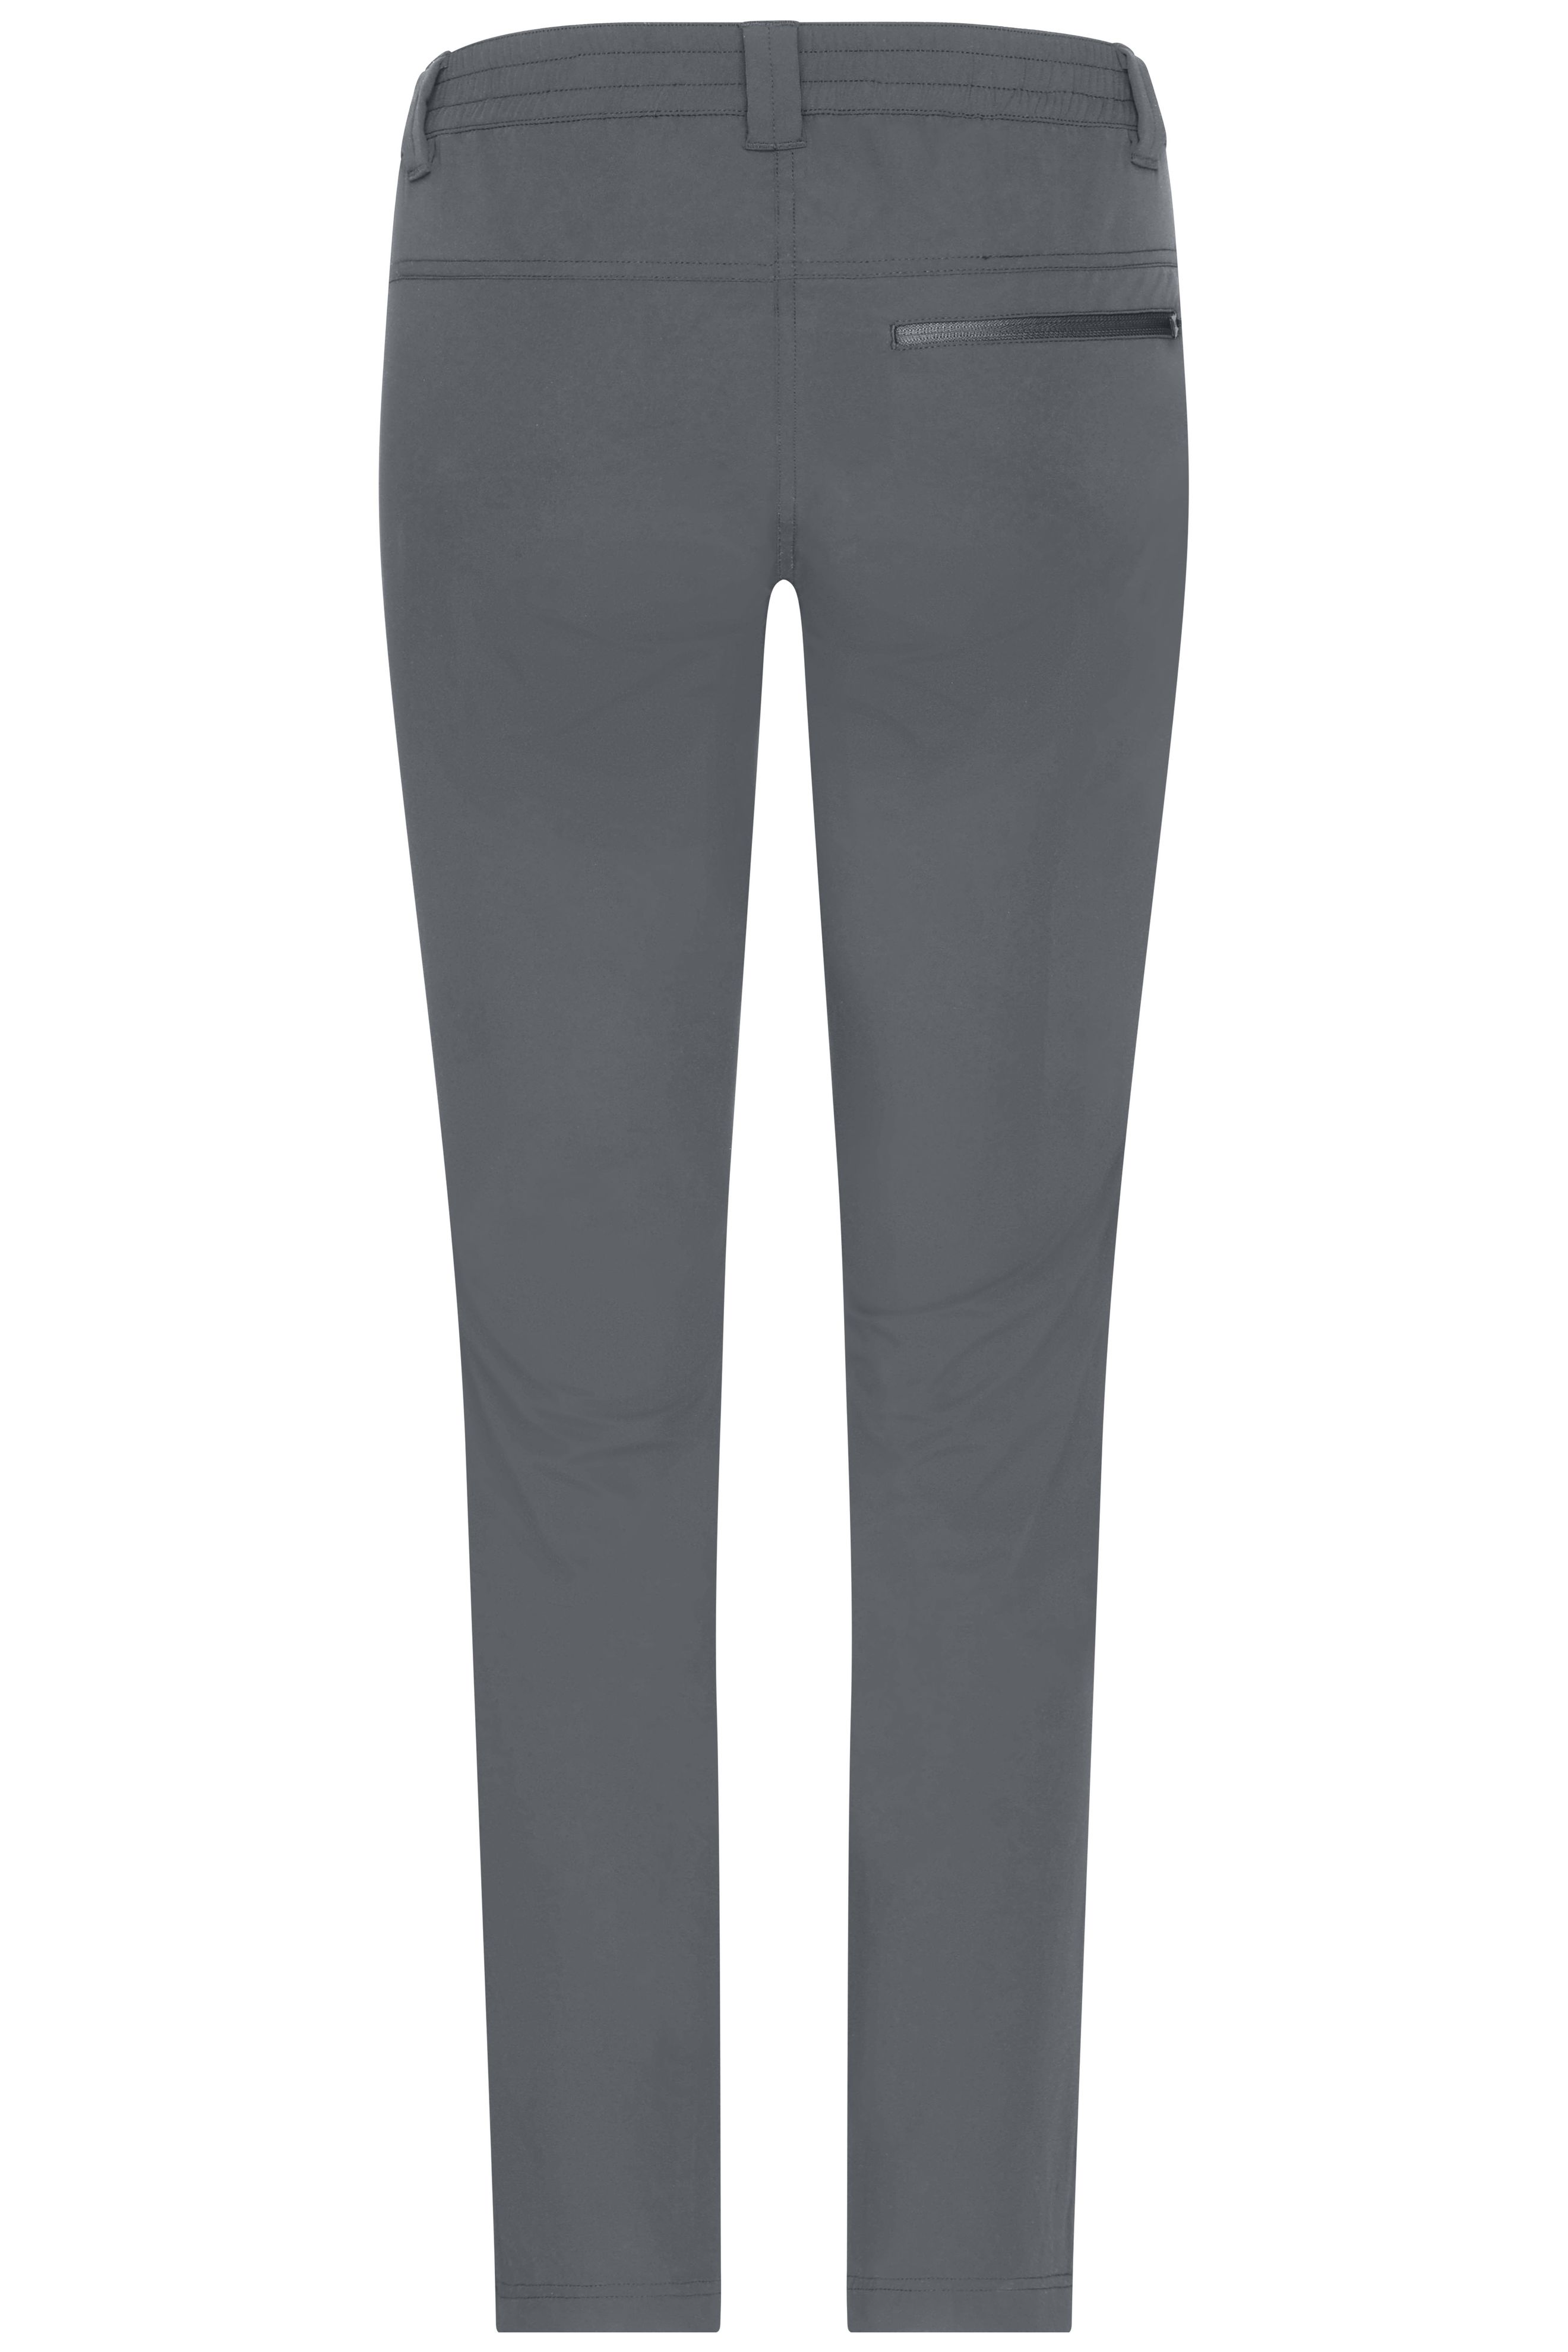 Ladies' Pants JN1207 Bi-elastische Hose in sportlicher Optik